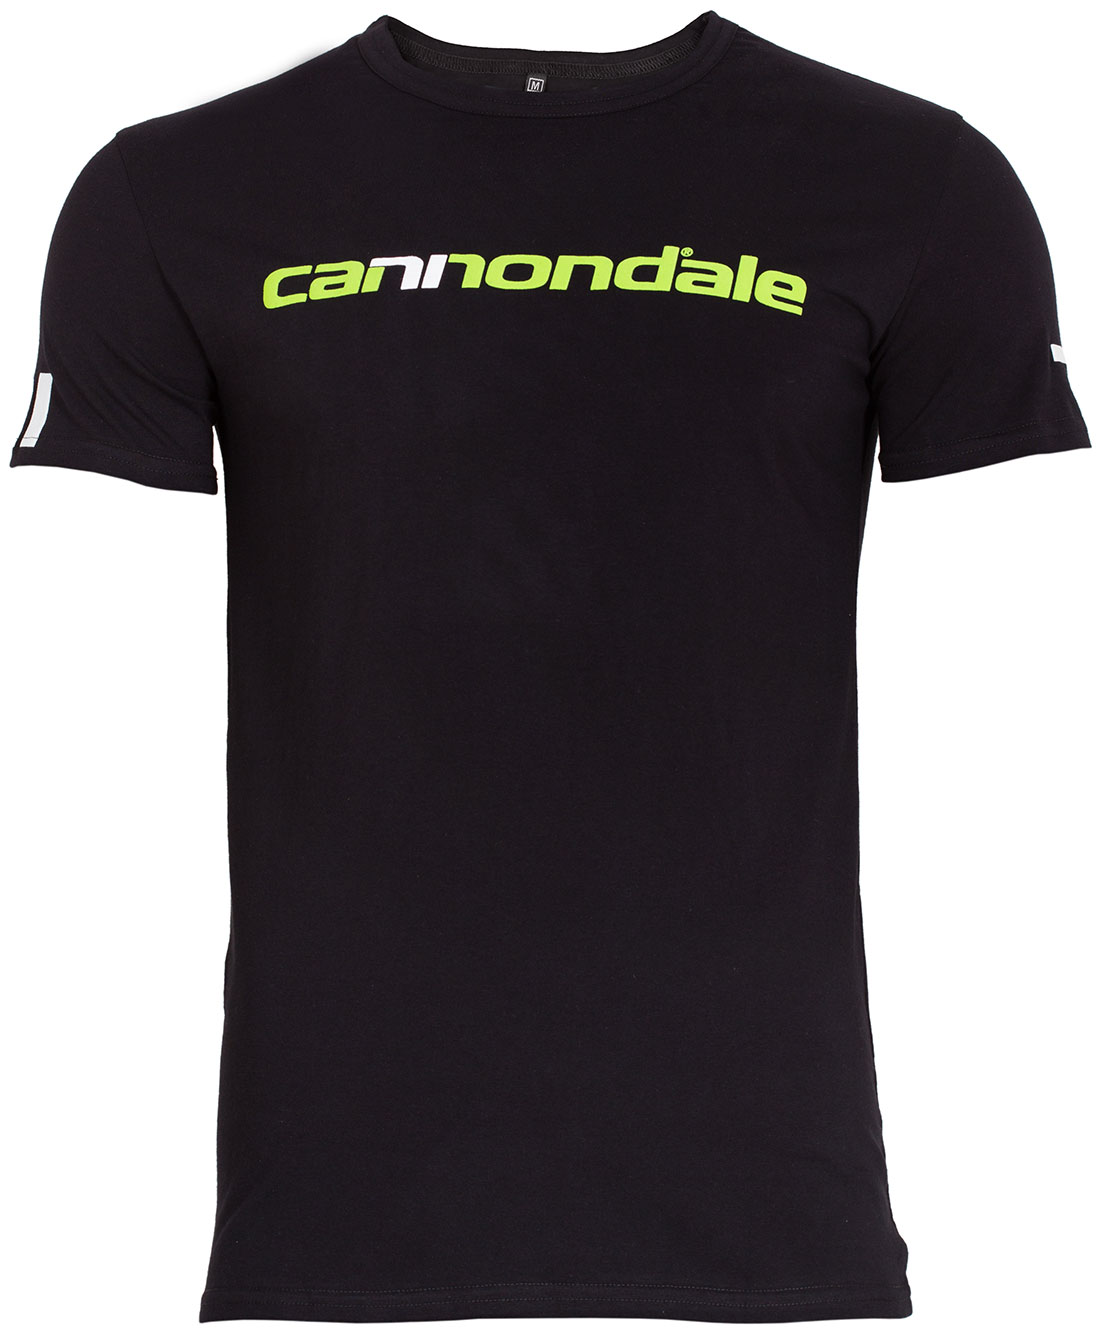 Футболка Cannondale с горизонтальным двухцветным логотипом, черная, размер М фото 